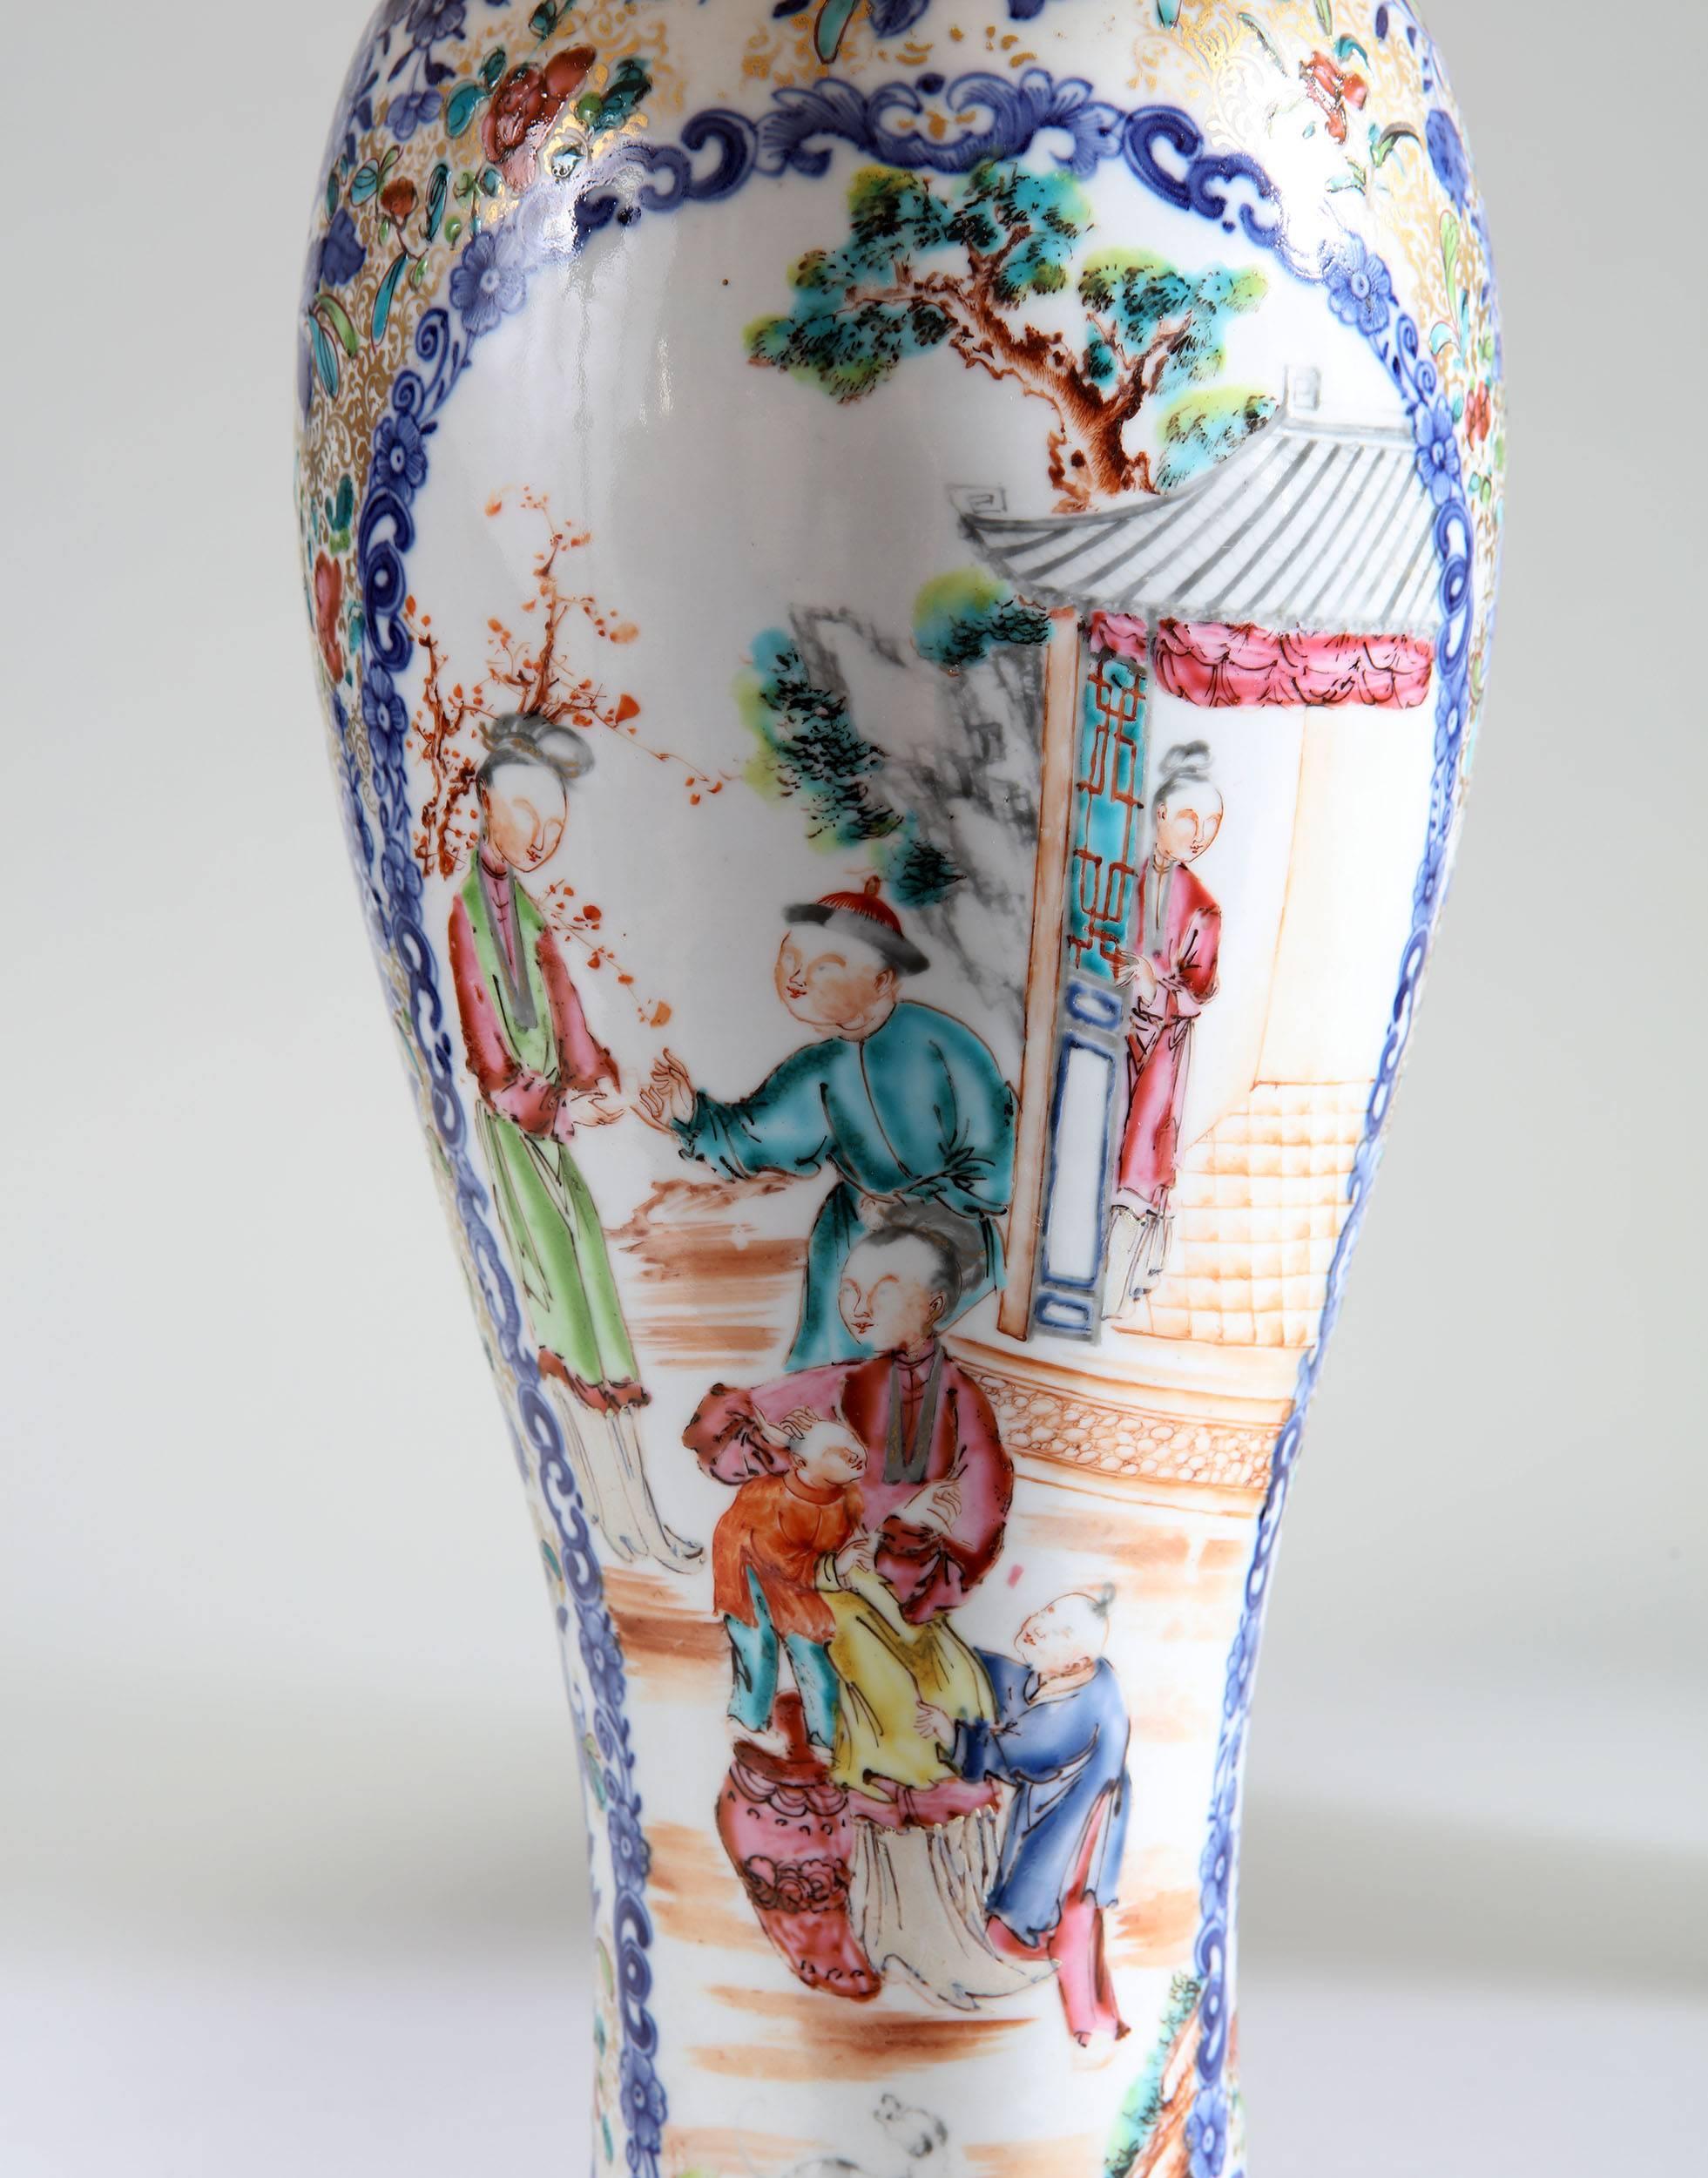 Une belle paire de vases en porcelaine d'exportation chinoise de la fin du XVIIIe siècle, maintenant montés comme lampes, avec une décoration polychrome sur l'ensemble, montrant des scènes de personnages chinois entourés d'un motif floral.

Veuillez